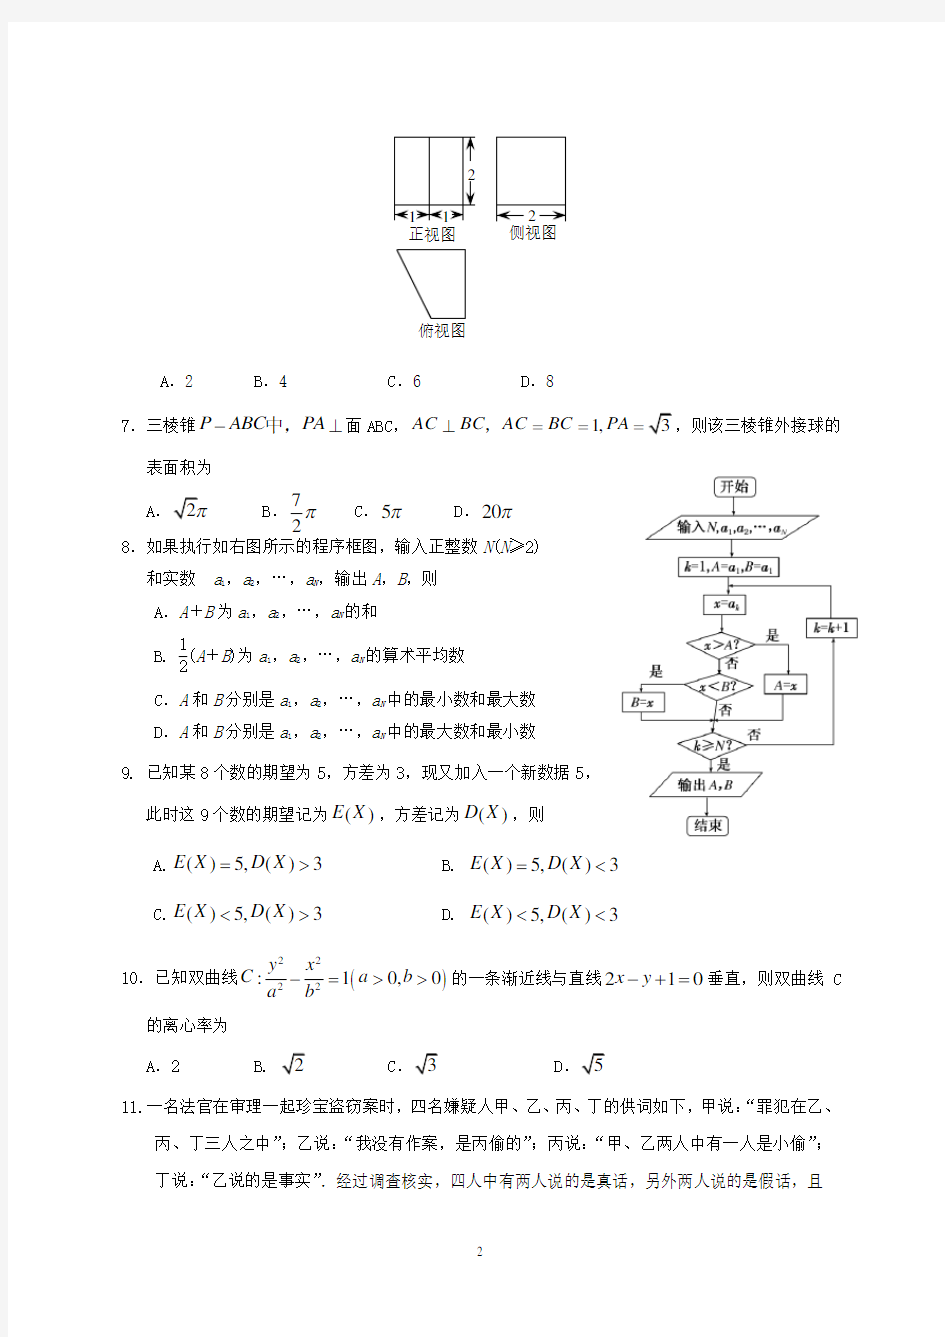 广东省2019年高考理科数学模拟试题及答案